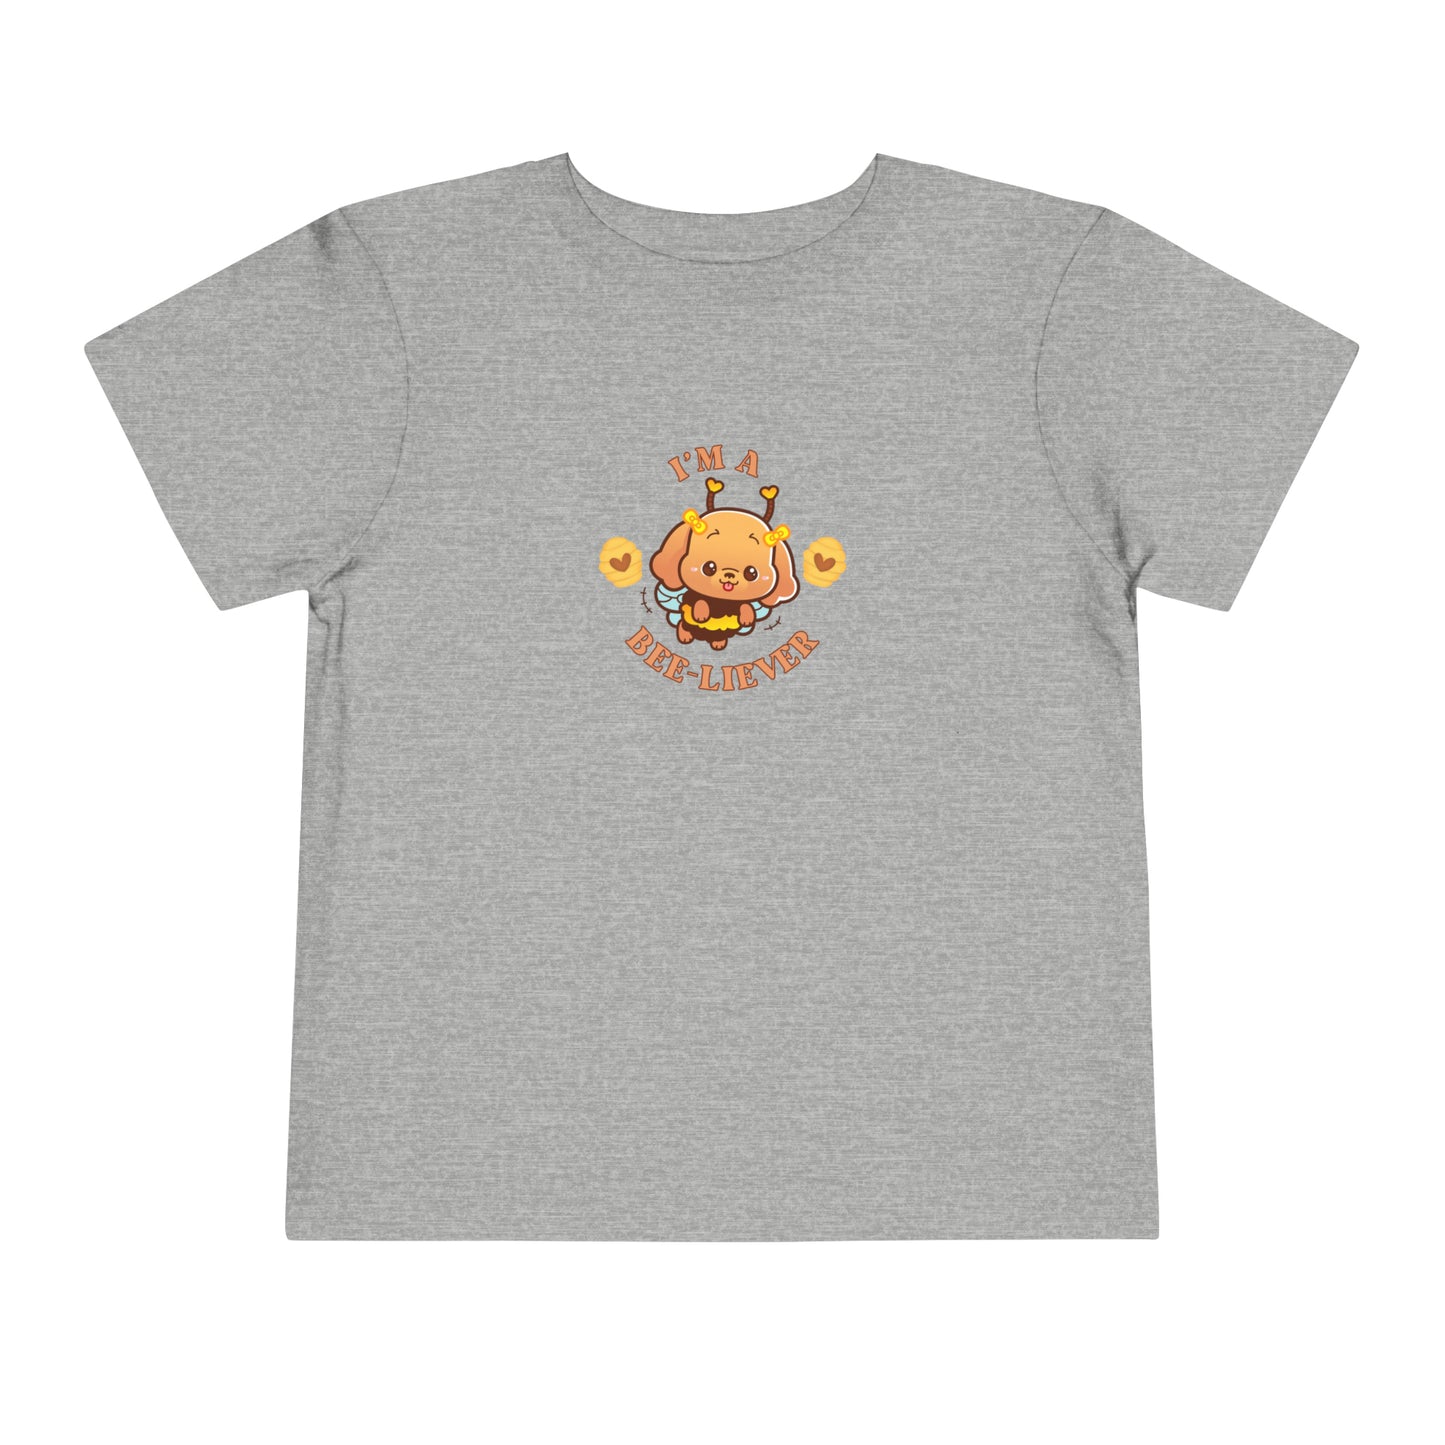 Bee-liever Toddler T-Shirt, Friendship Tee, Kids Faith Apparel, Christian Kids Tee